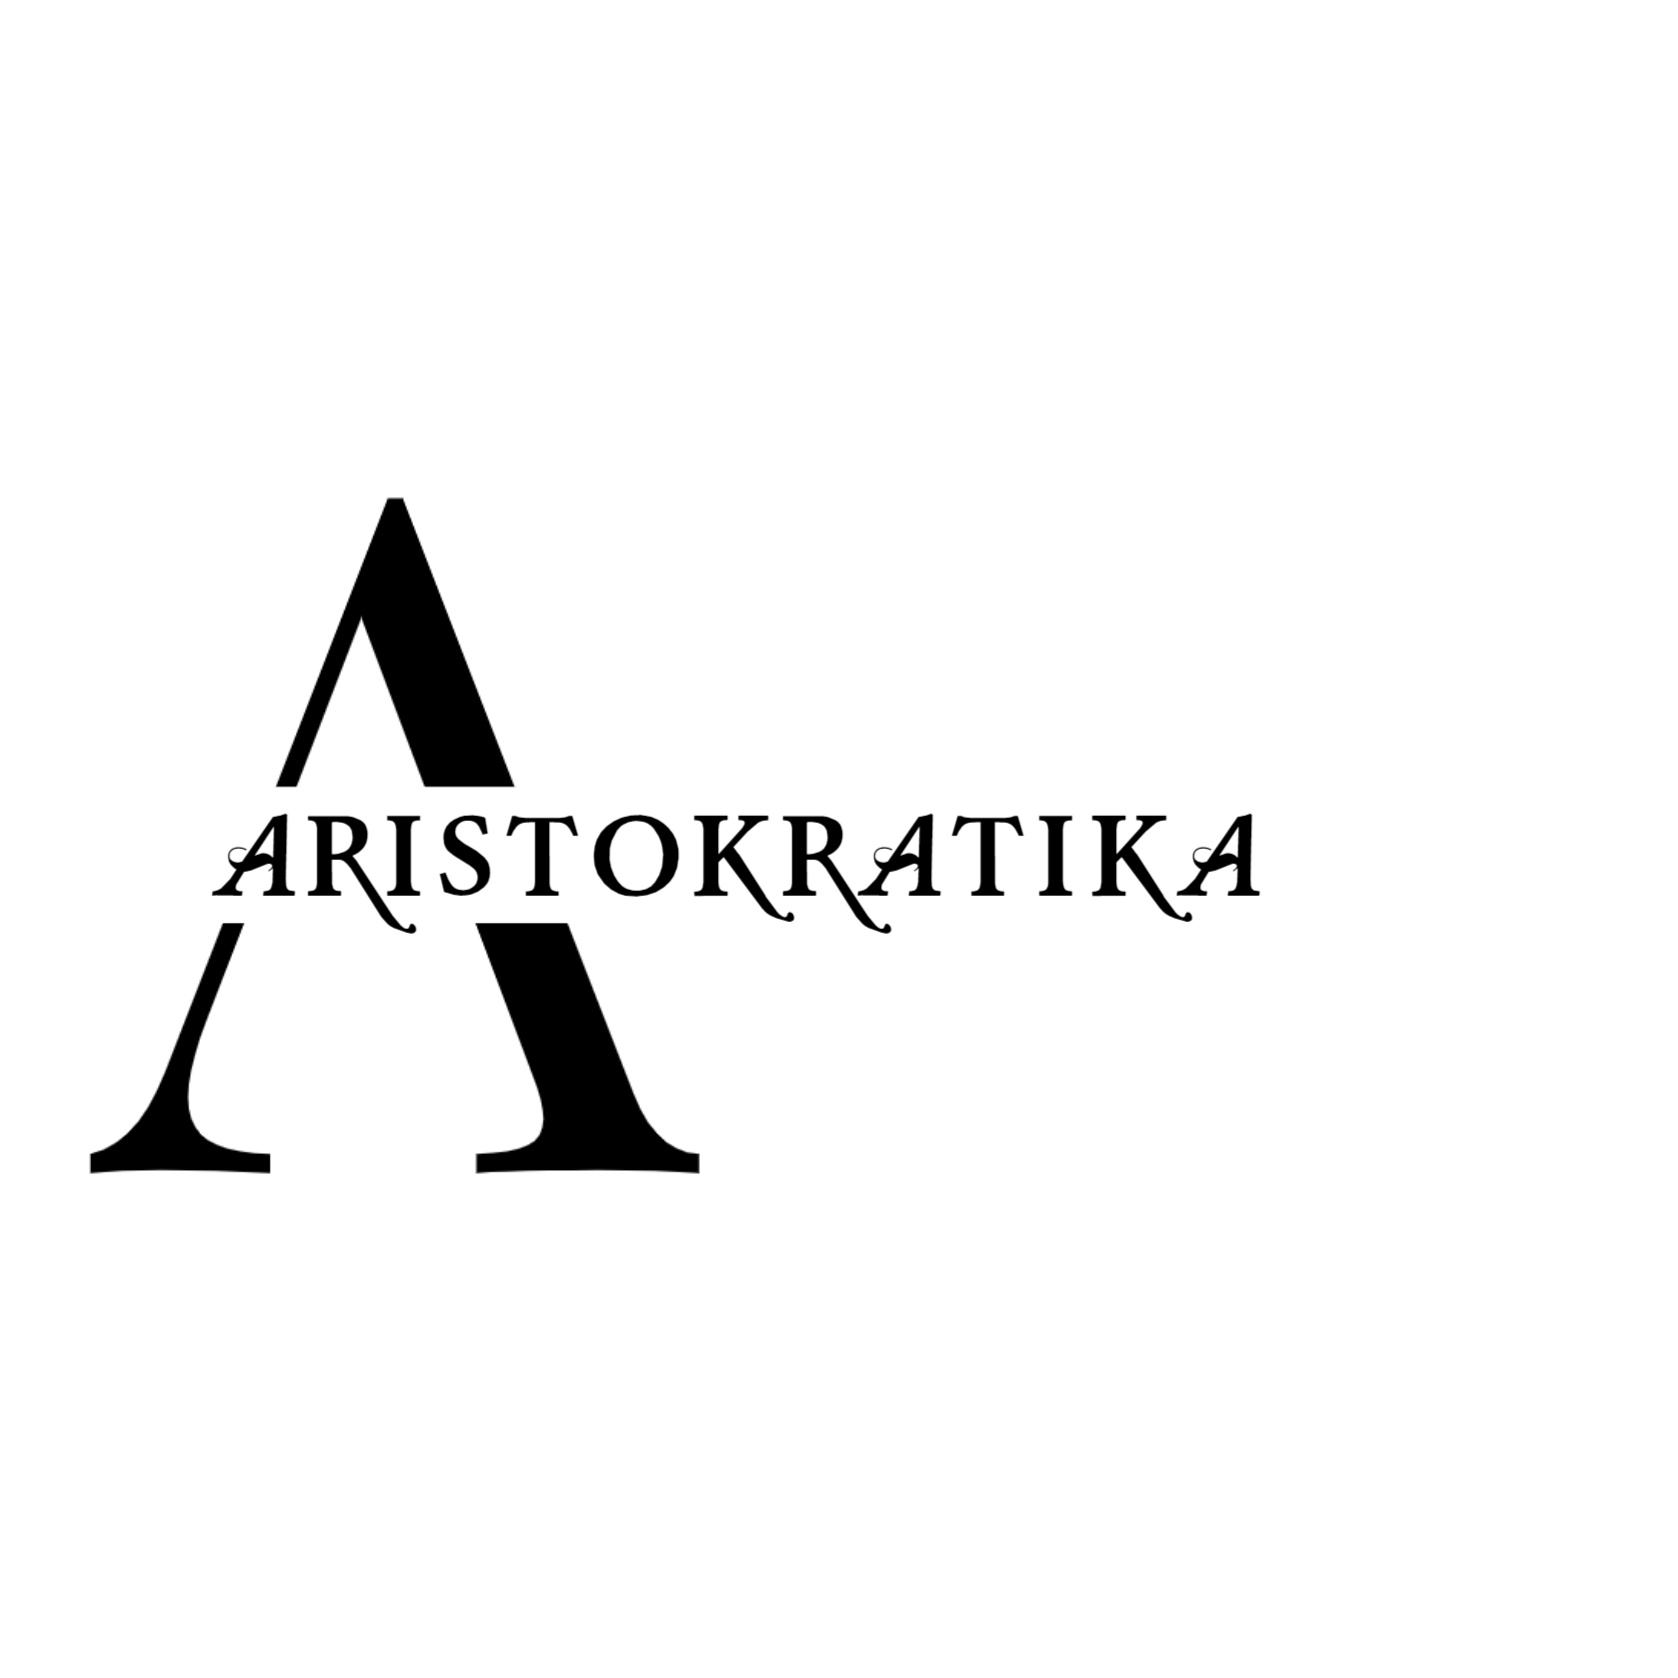 Aristokratikaa